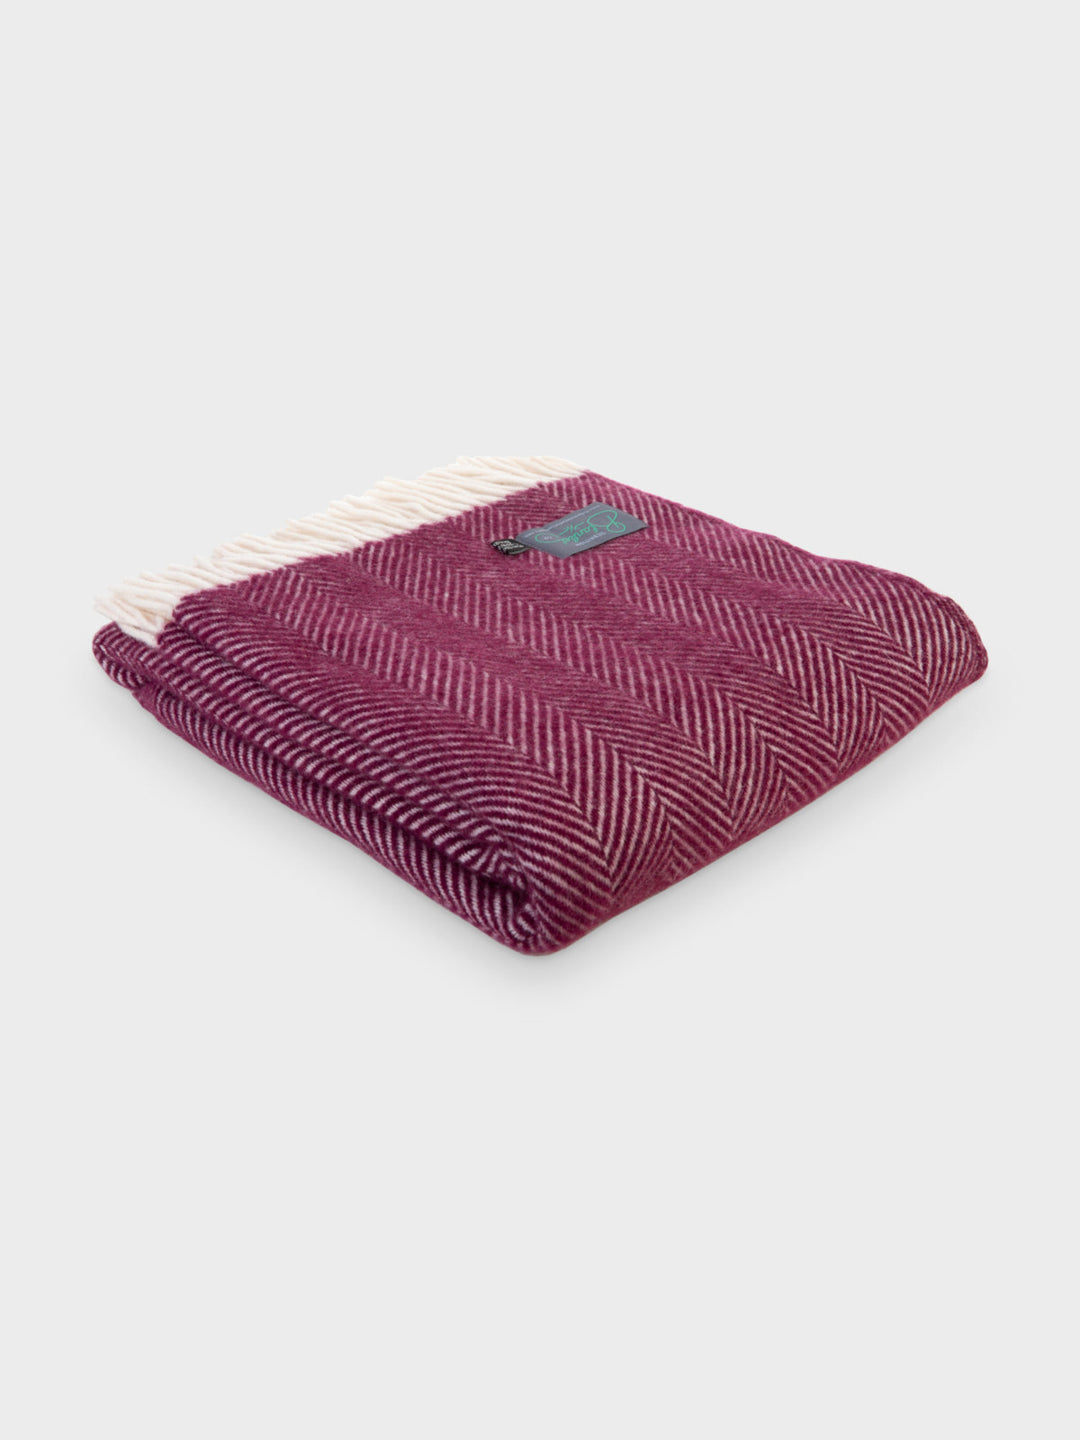 A folded burgundy herringbone wool throw by The British Blanket Company.